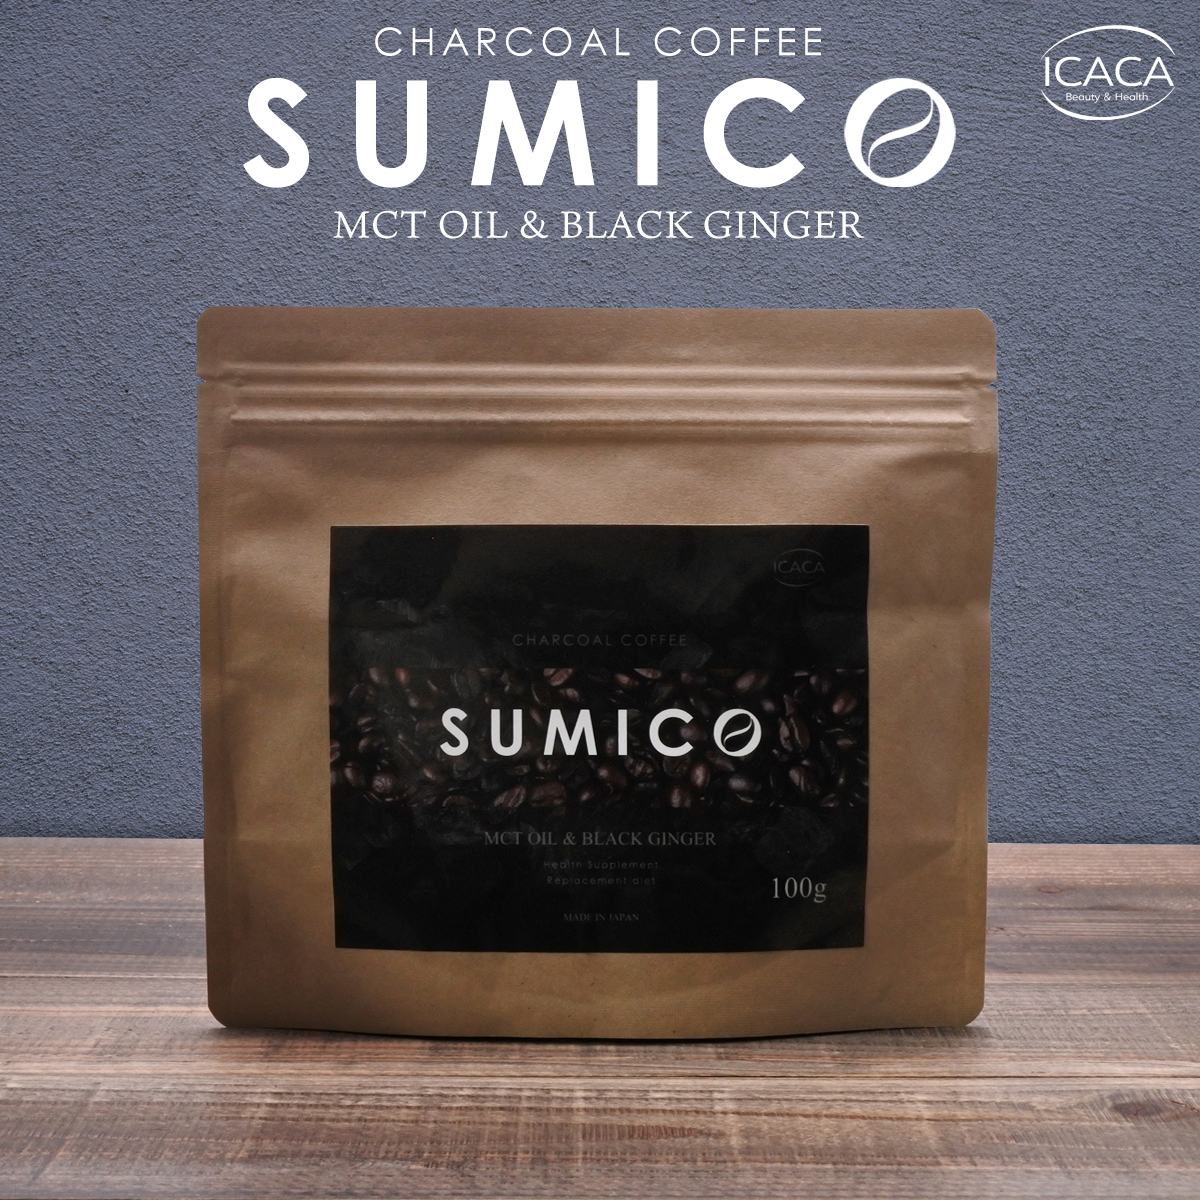 チャコールコーヒー SUMICO ダイエットコーヒー 100g 約1カ月分 